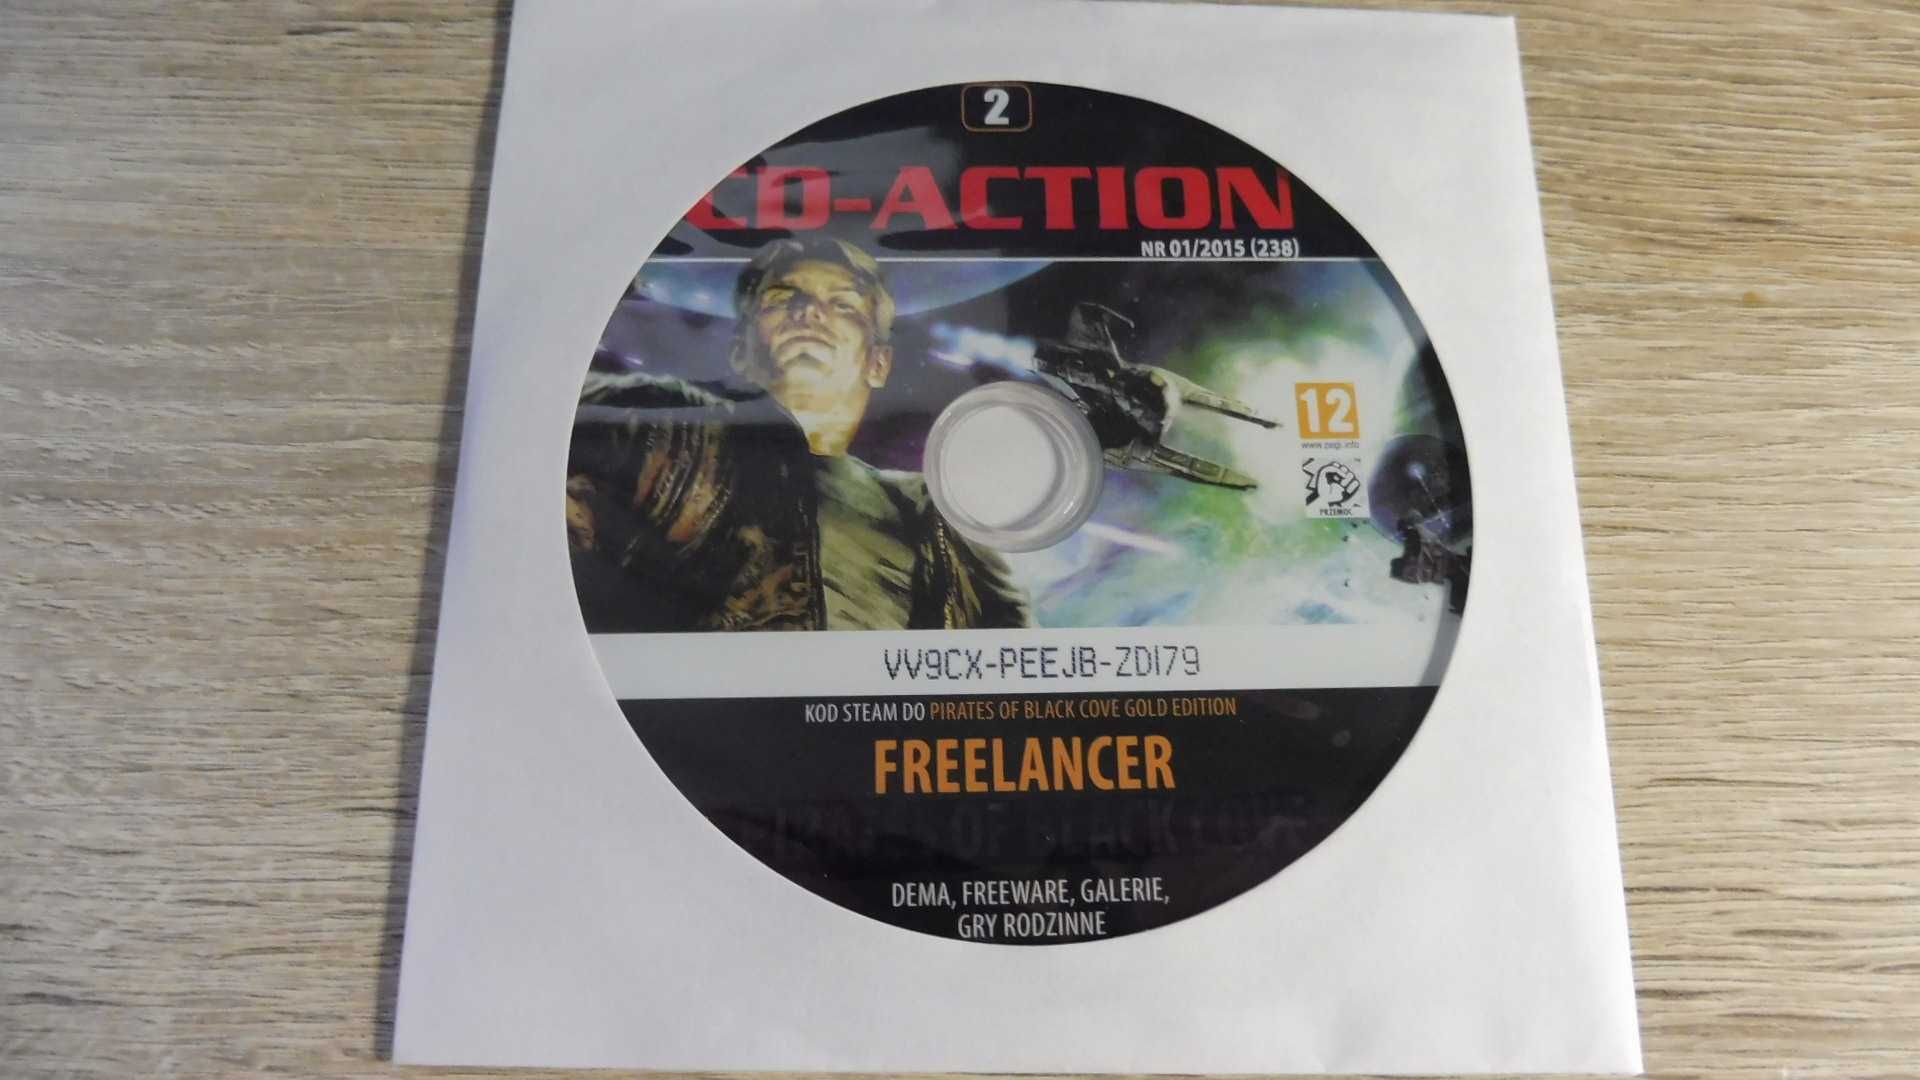 CD Action 01/2015 (238) - DVD 2 - Freelancer